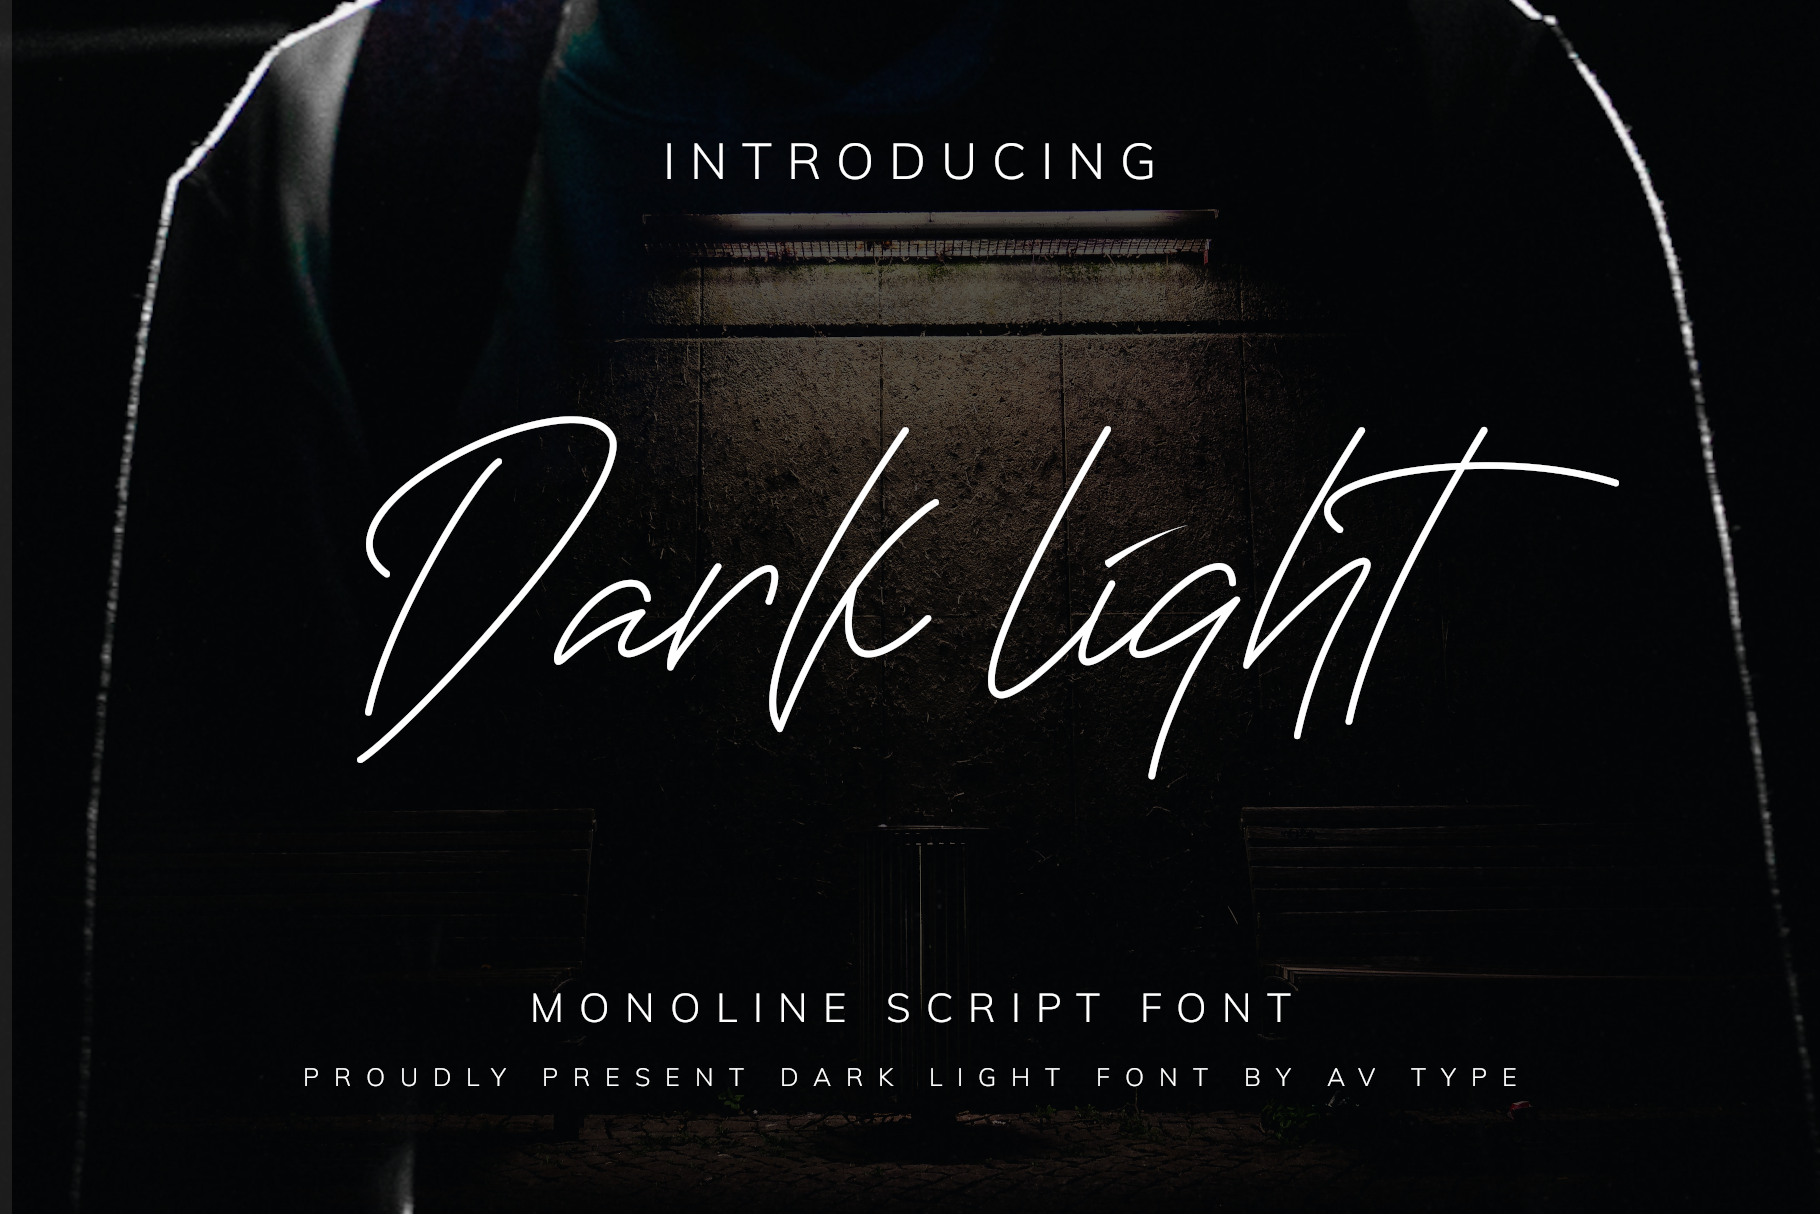 Darklight script